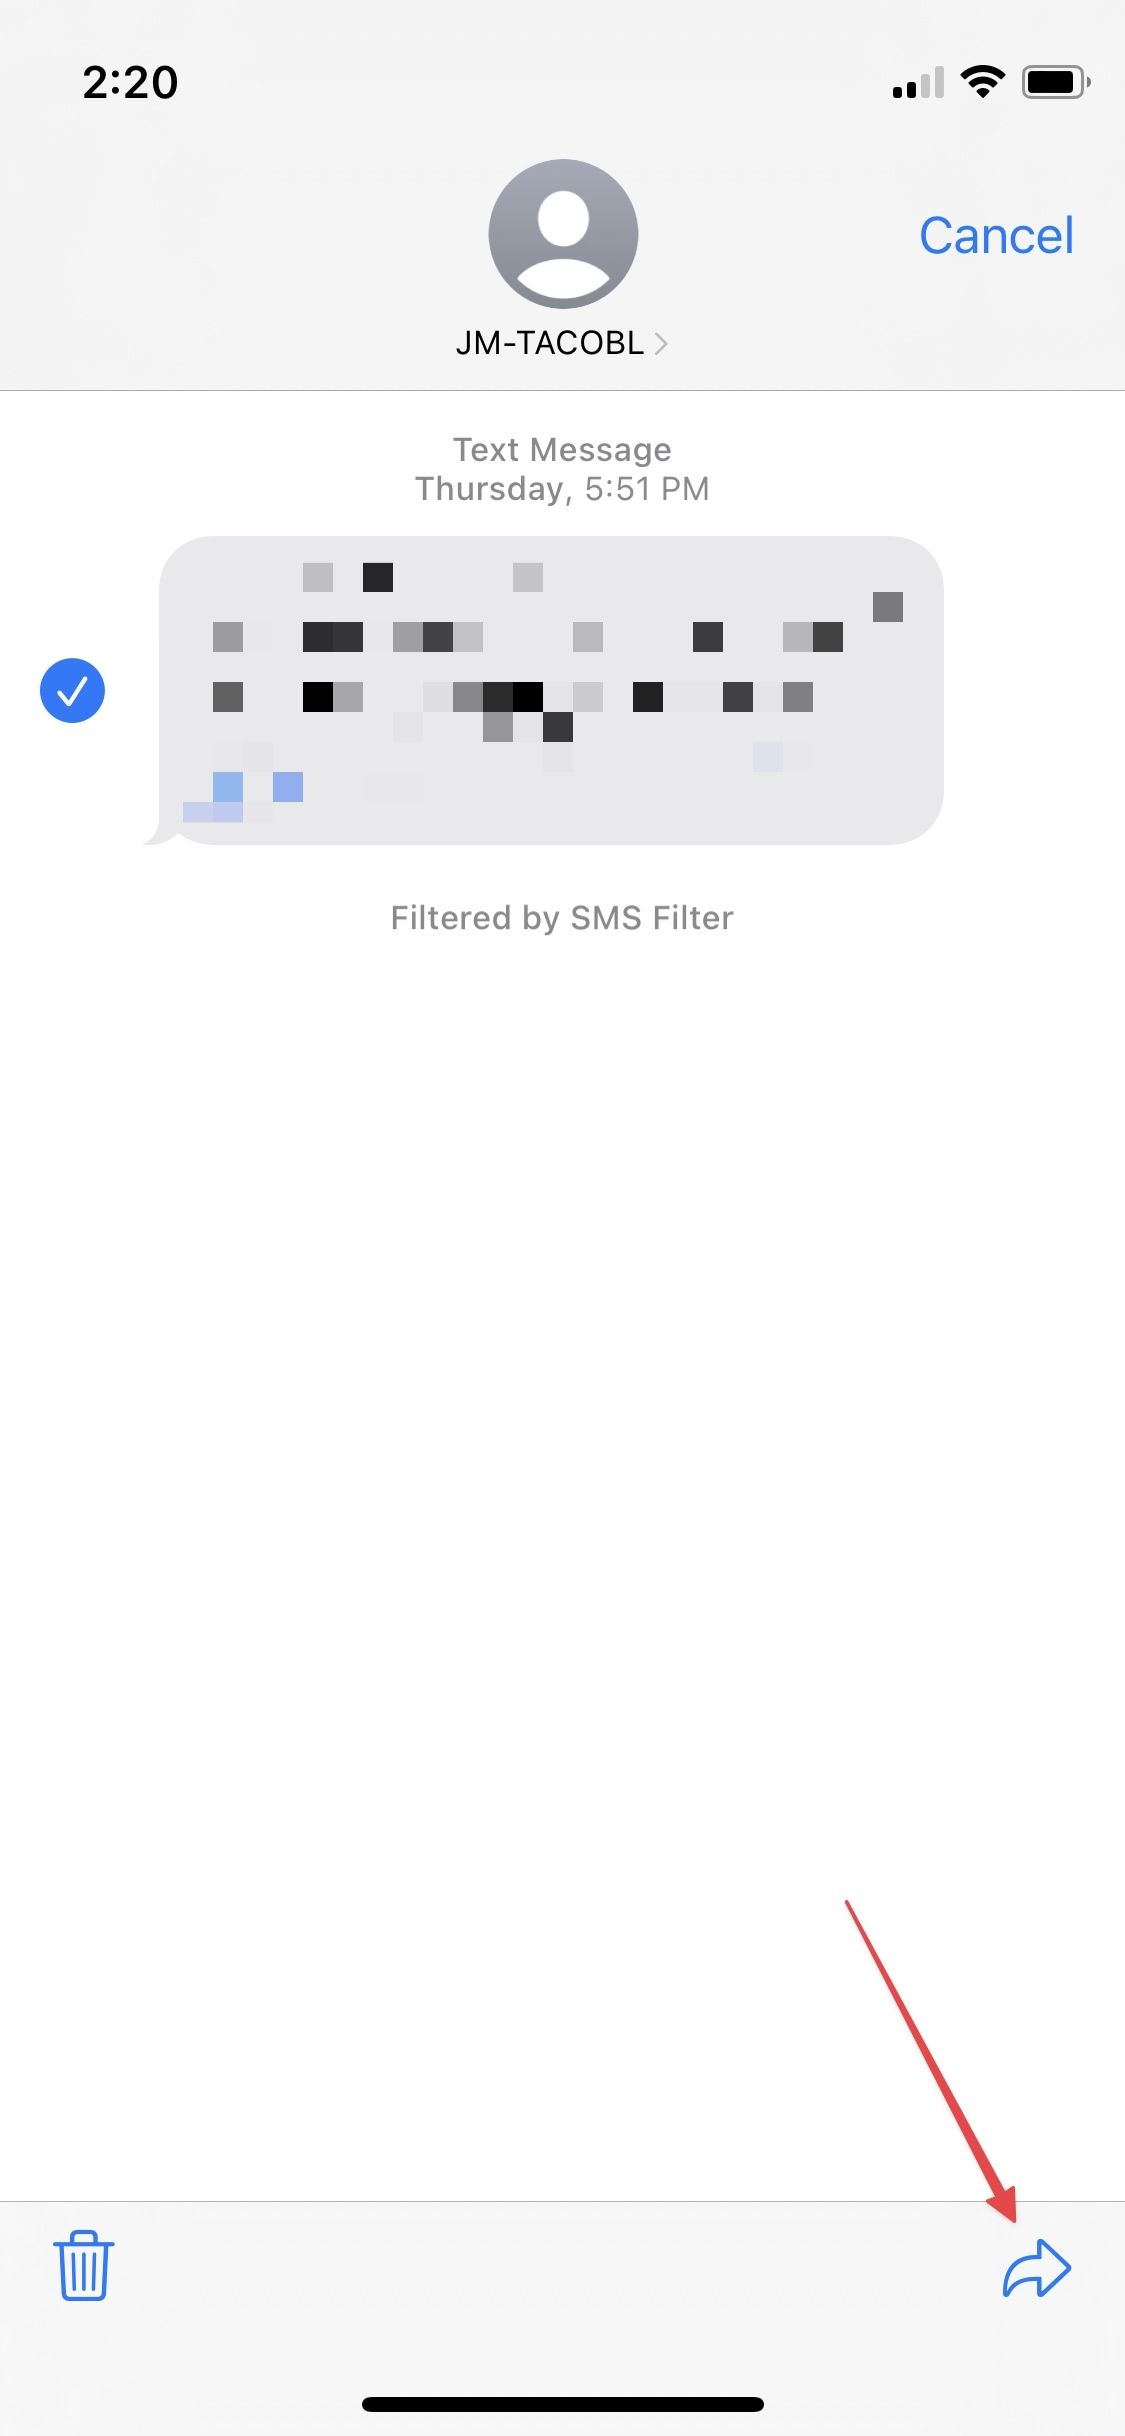 Captura de tela da interface de chat do iMessage, onde a opção ‘Encaminhar’ é destacada por uma seta no canto inferior direito da tela, indicando sua localização e funcionalidade para encaminhamento de mensagens.